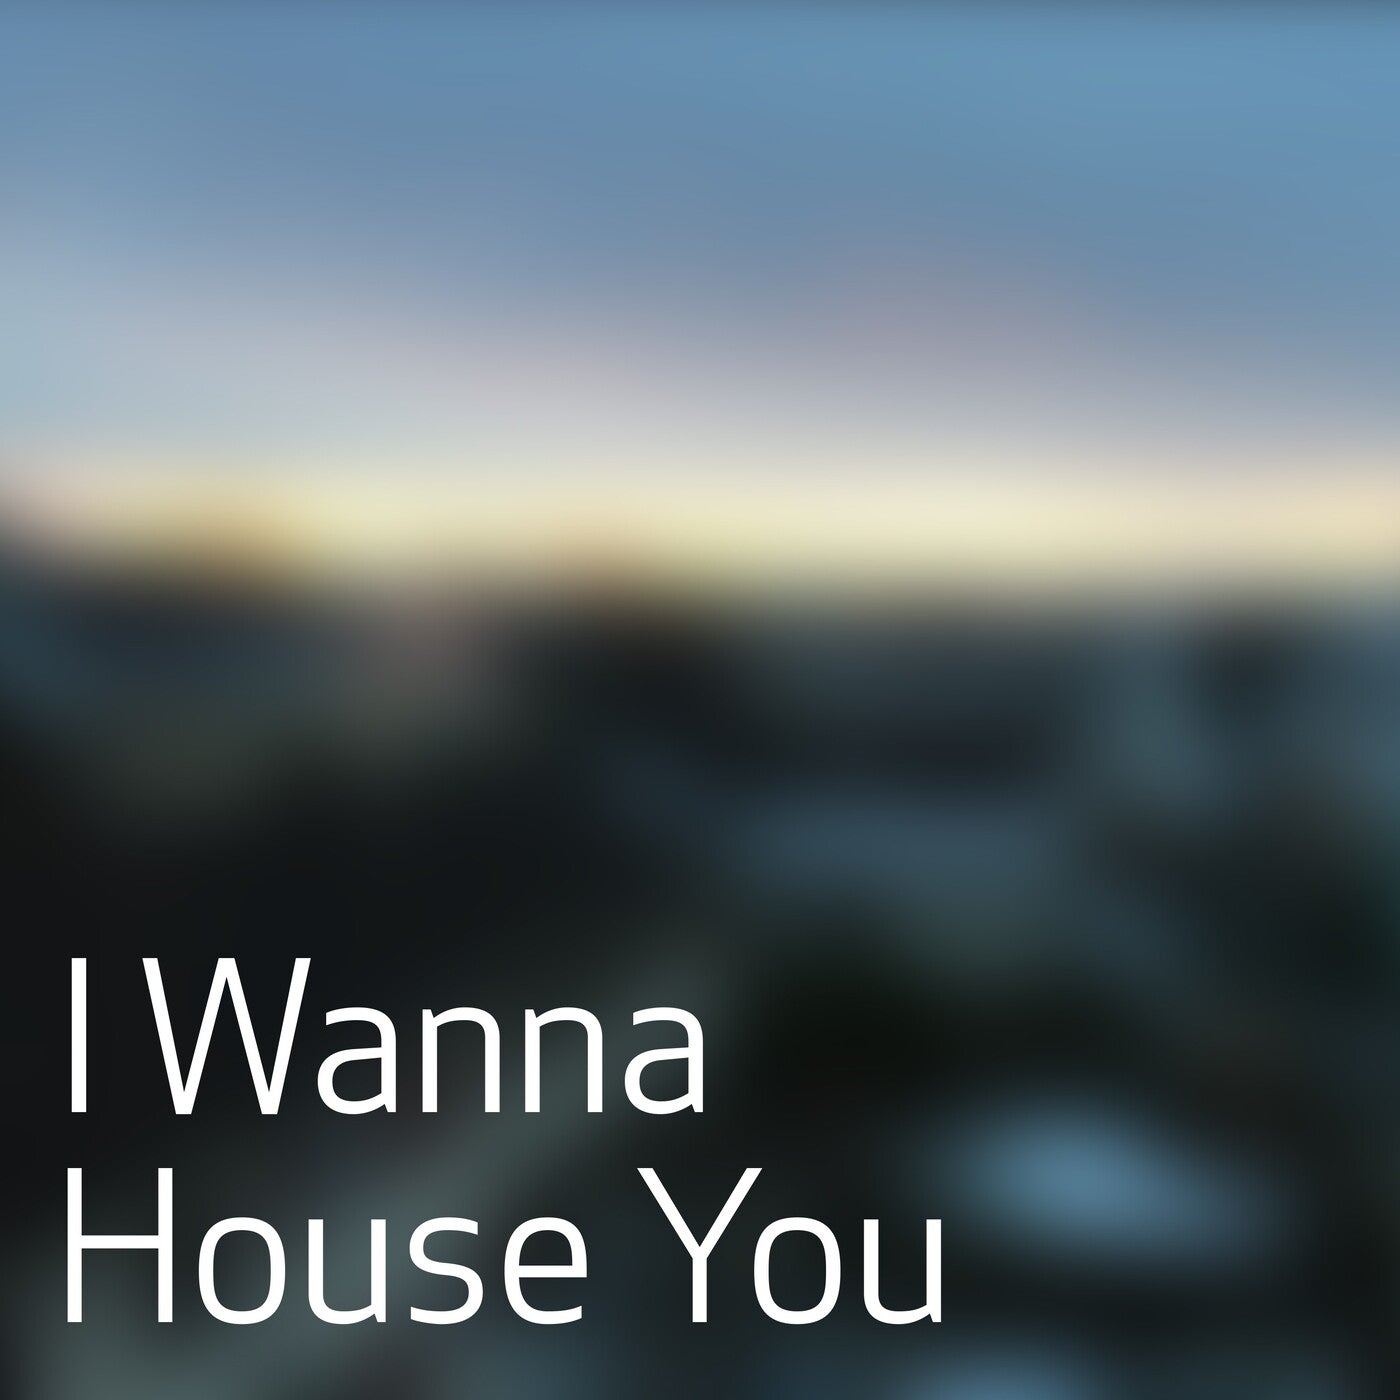 I Wanna House You